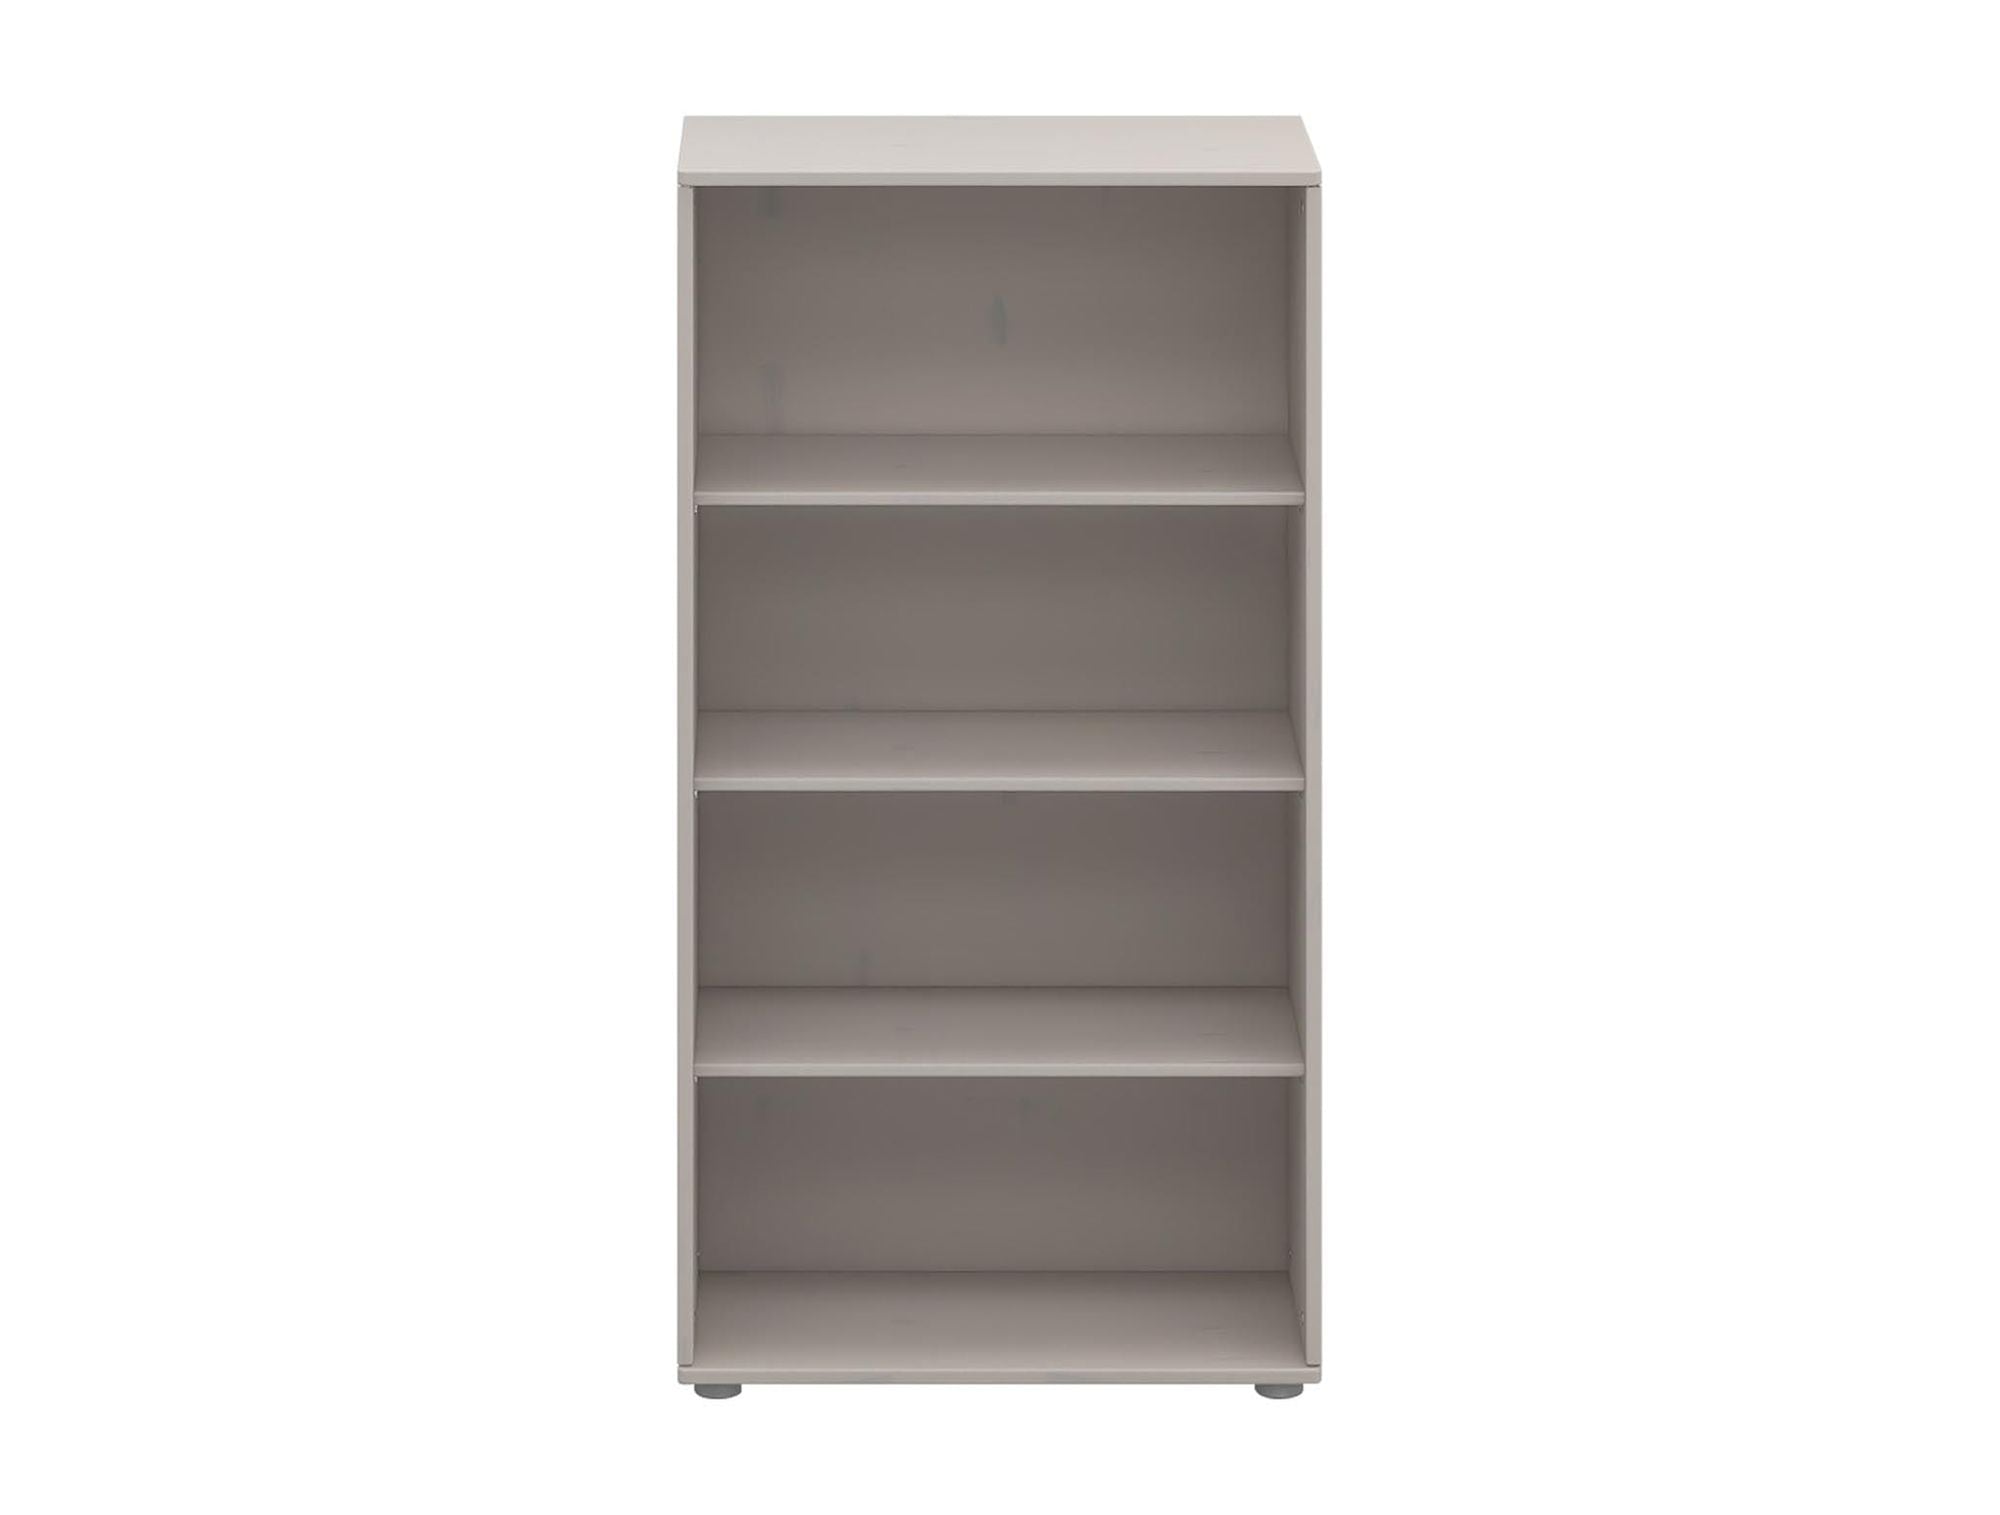 FLEXA Bookcase with 3 shelves